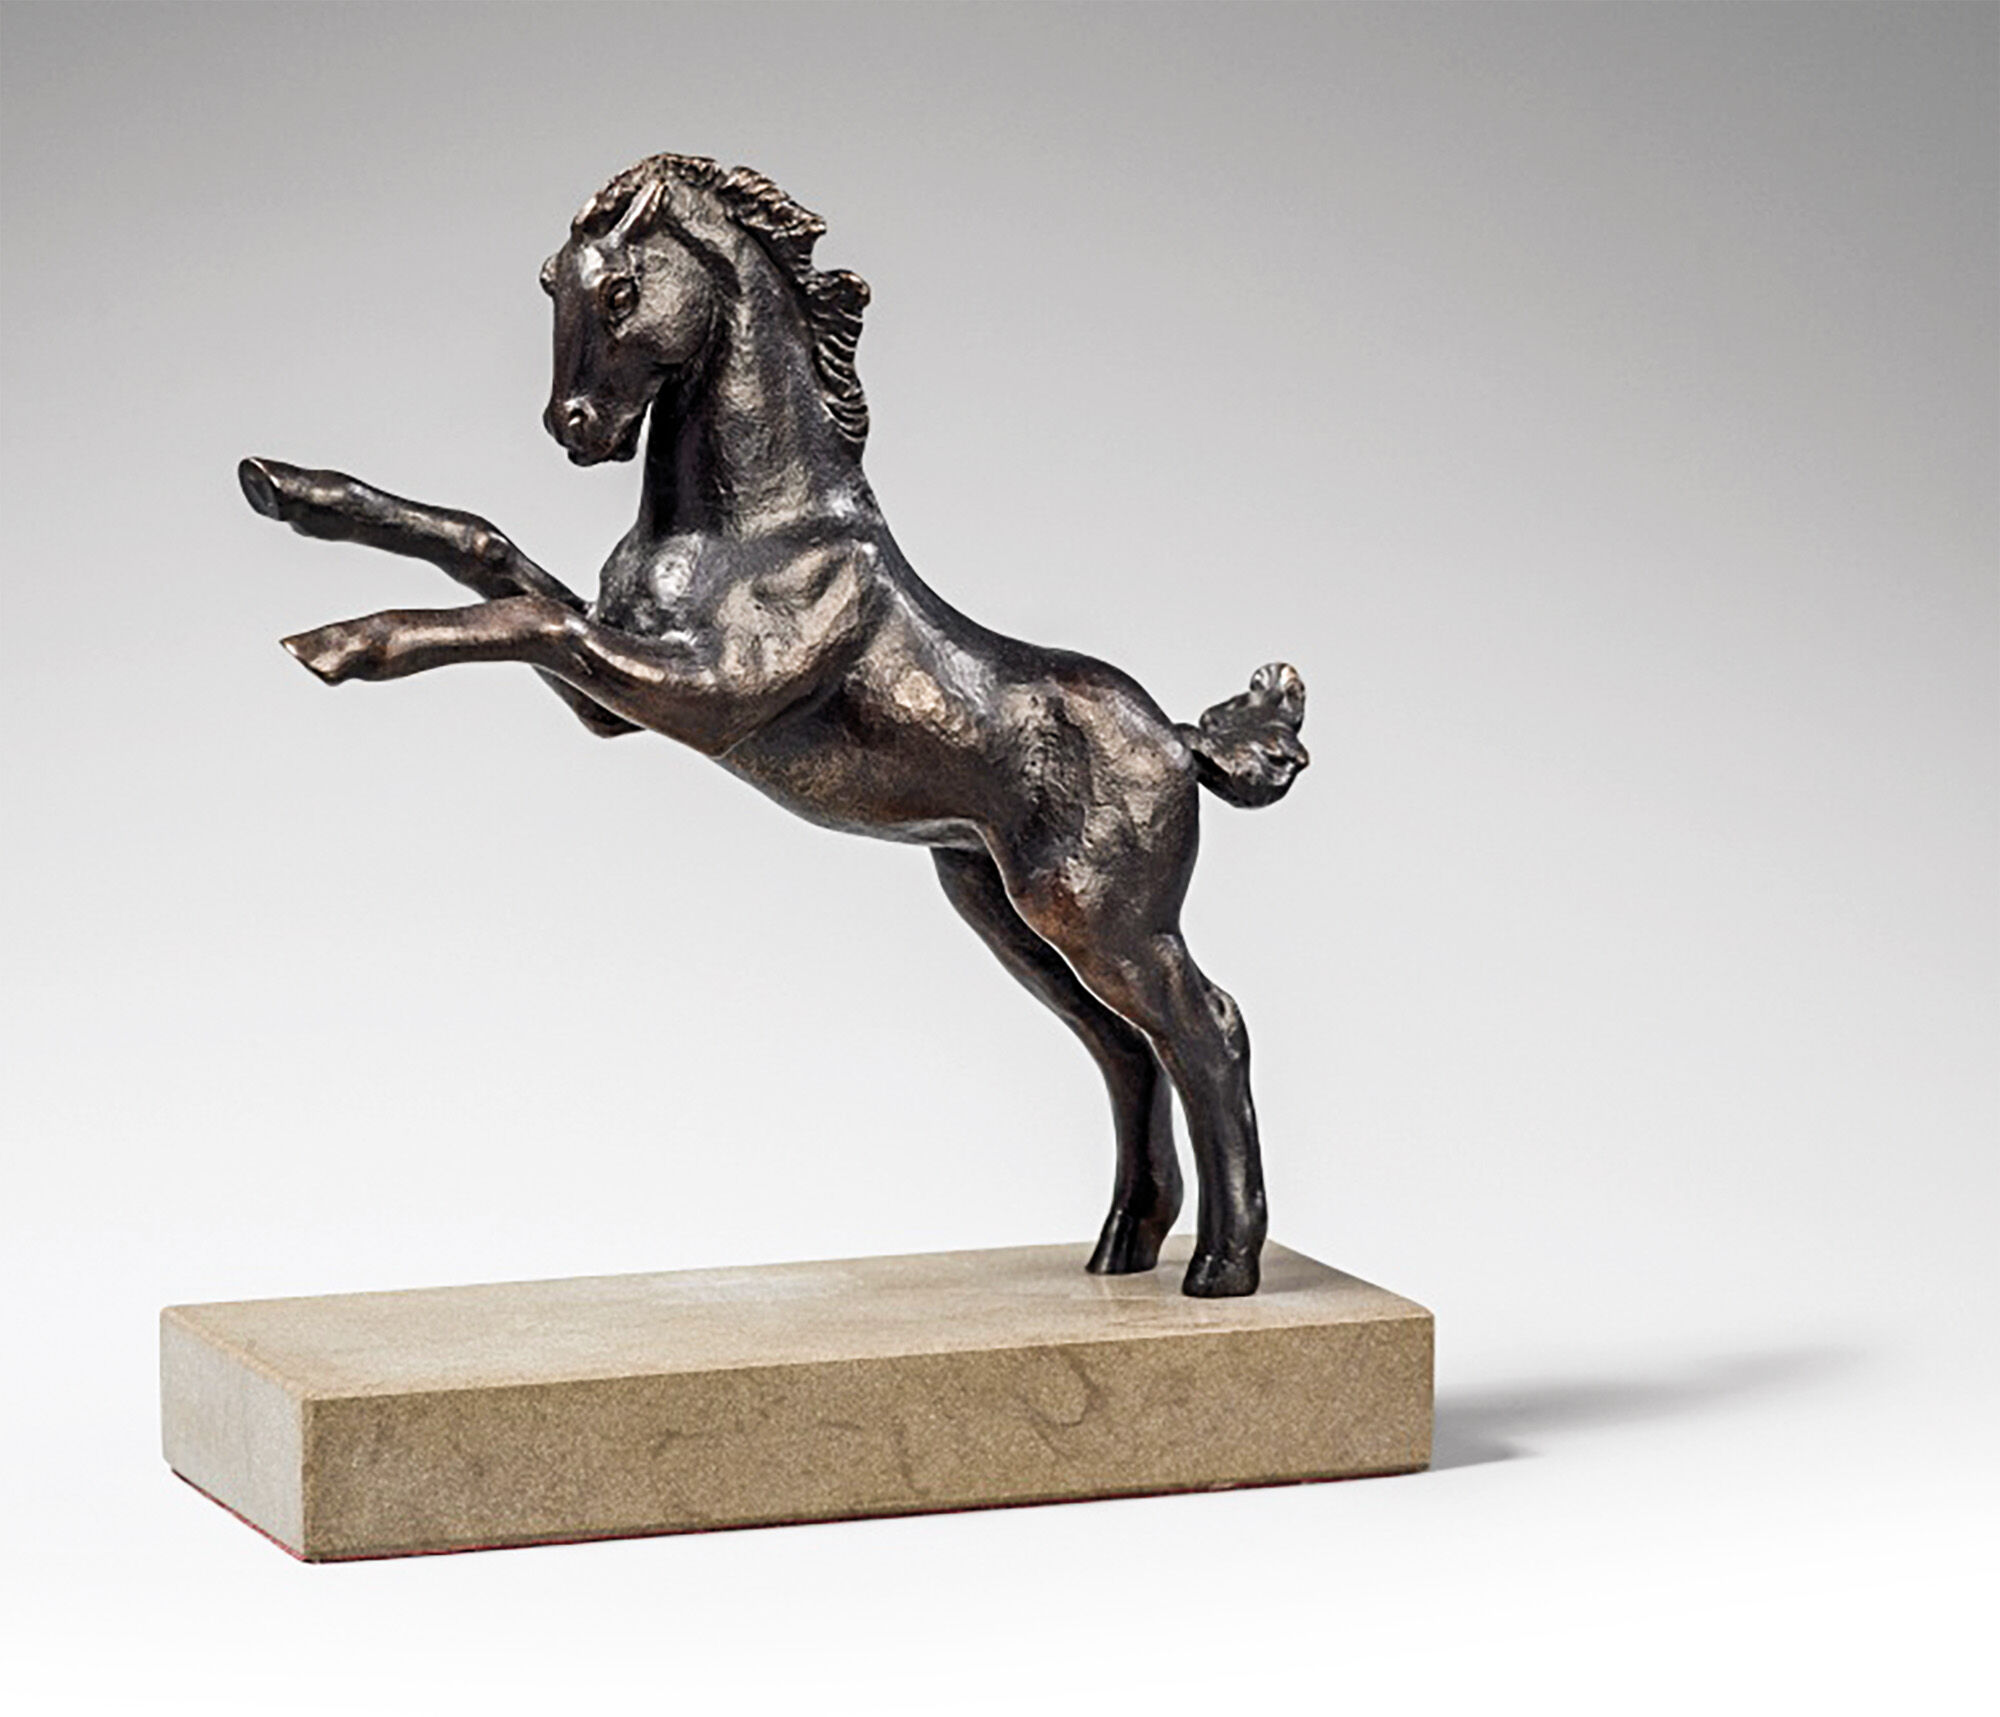 Sculpture "Jumping Horse (Rising Foal)" (1916), bronze by Renée Sintenis